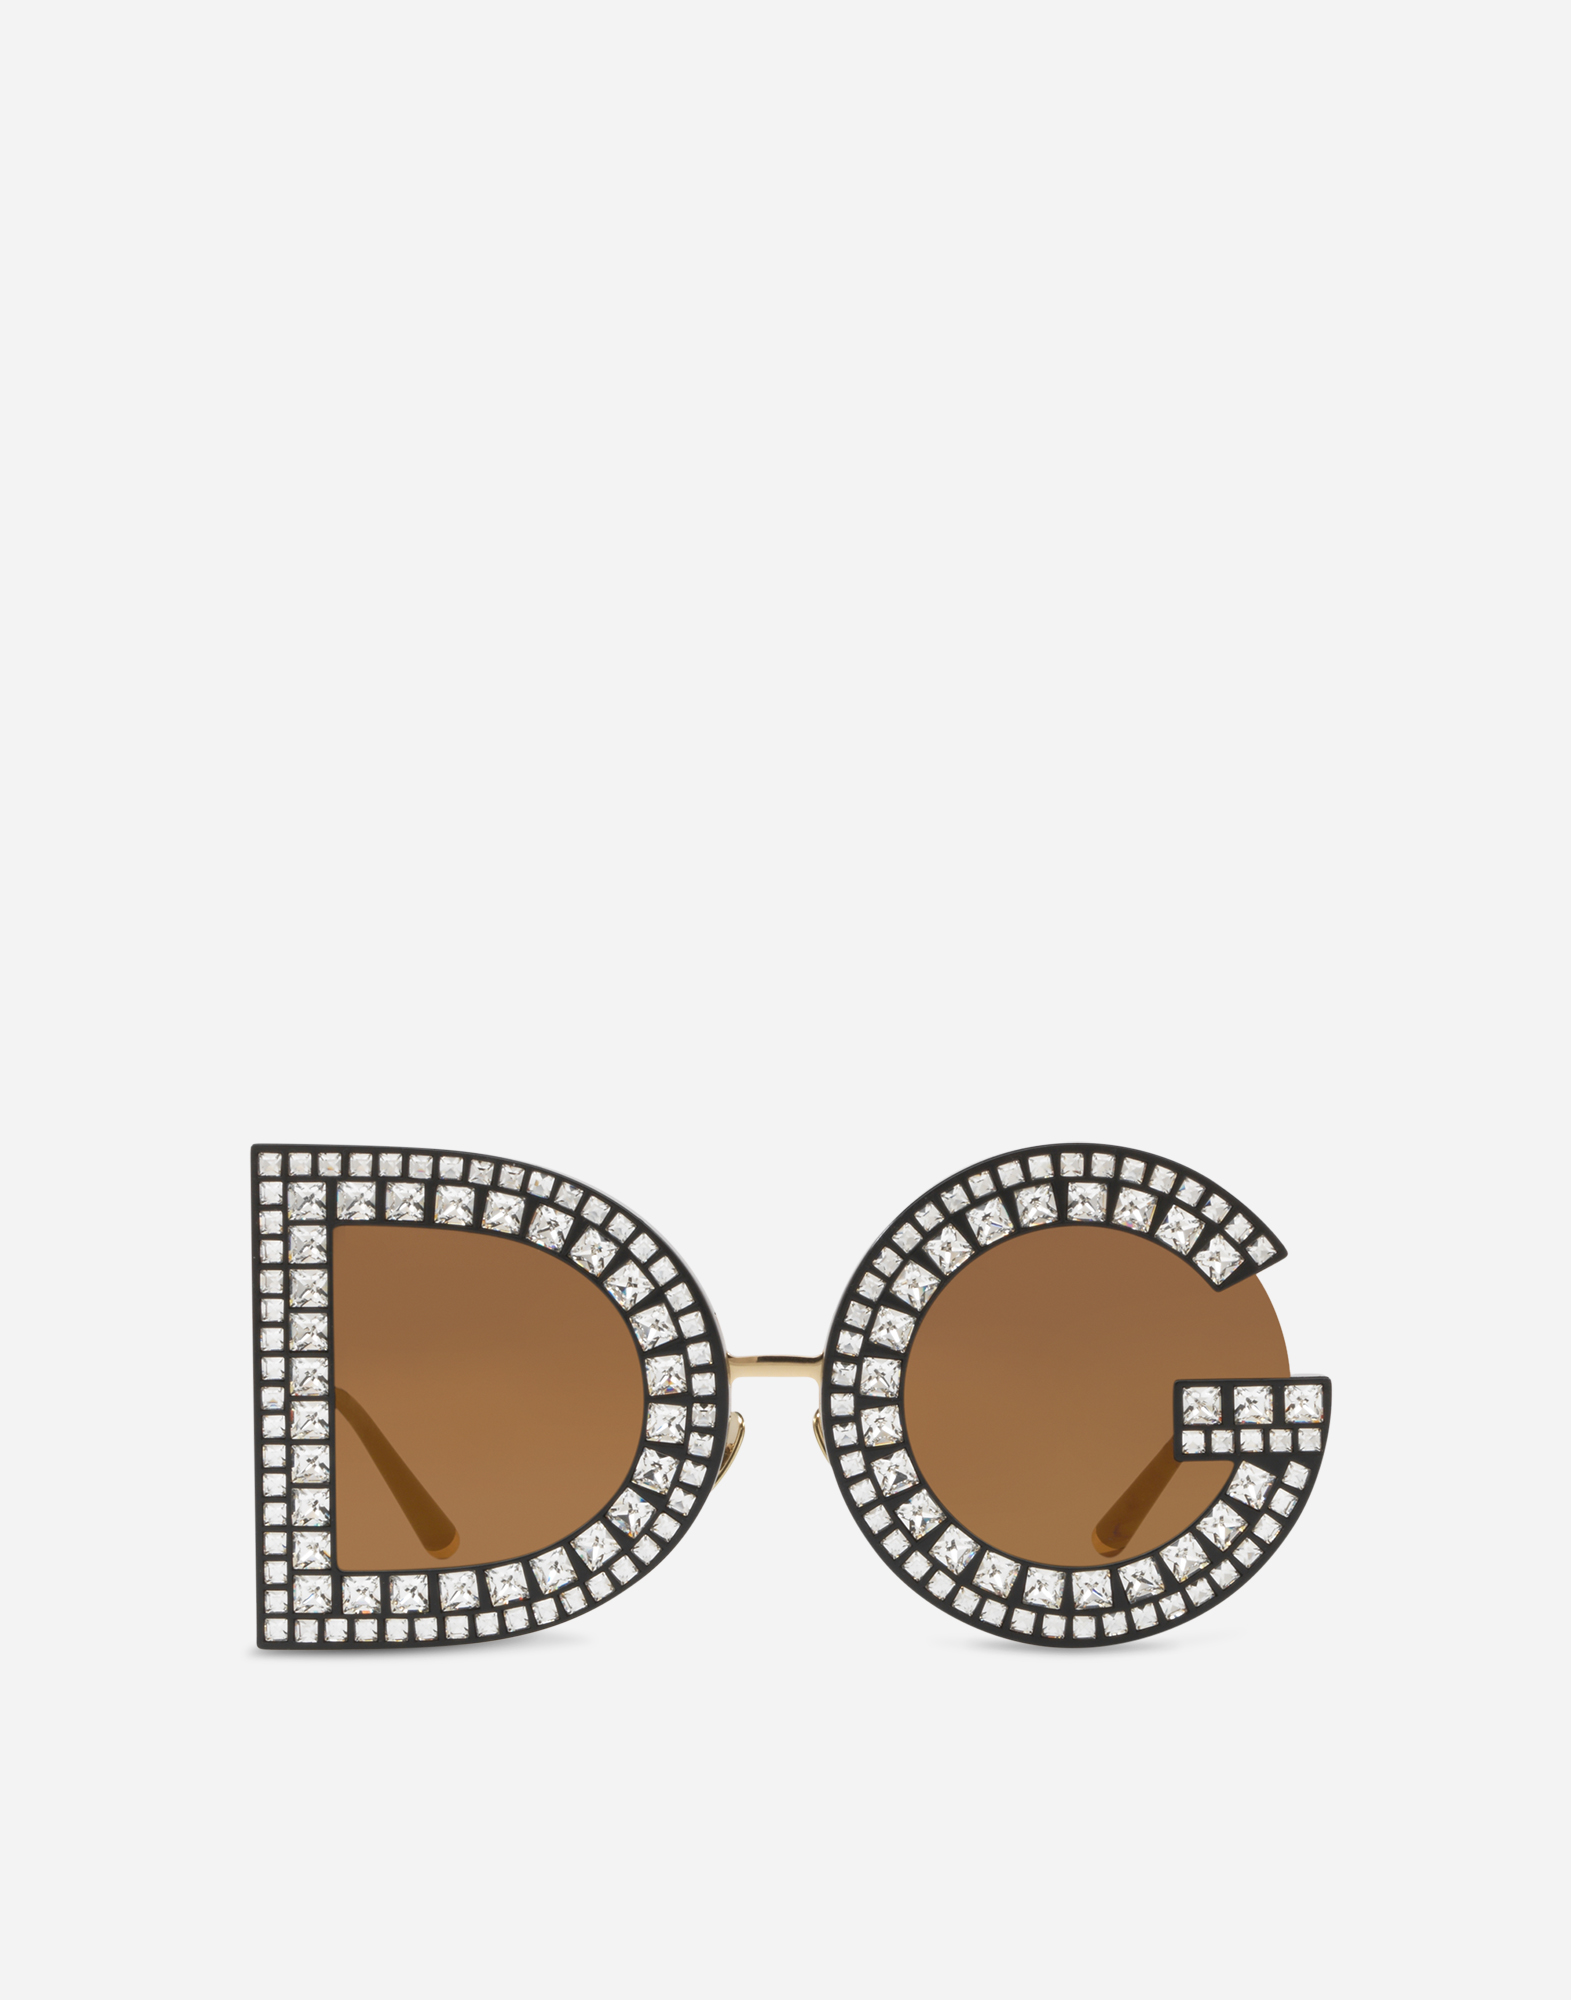 d&g dolce & gabbana women's sunglasses